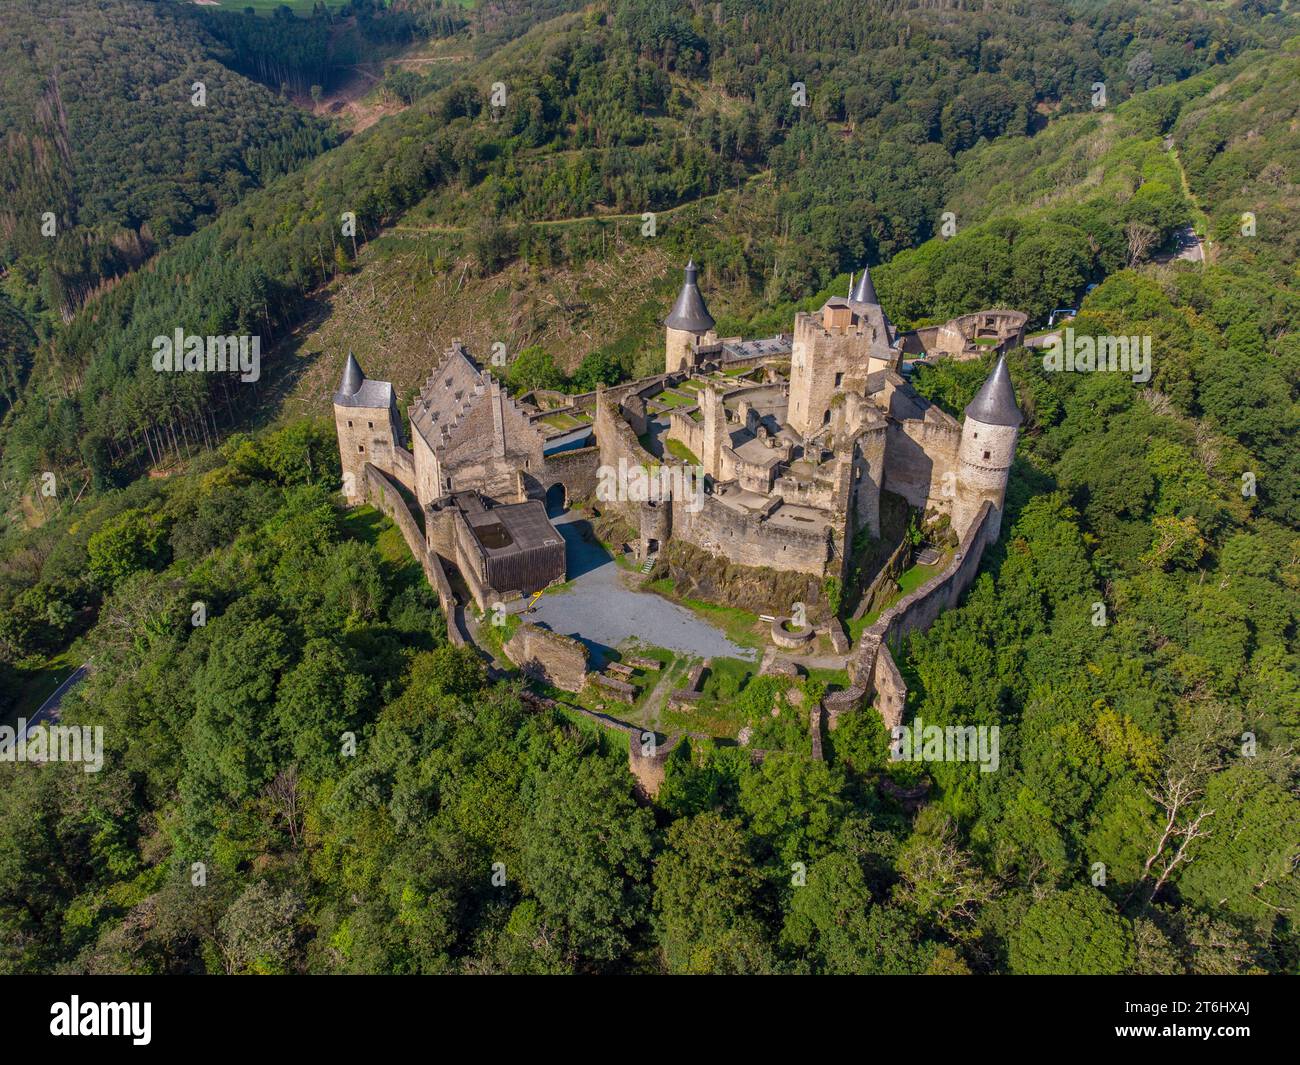 Château de Bourscheid dans la vallée de la Sure, Ardennes, Grand-Duché de Luxembourg, Bourscheid, Benelux, pays du Benelux, Diekirch, Luxembourg, Letzebuerg Banque D'Images